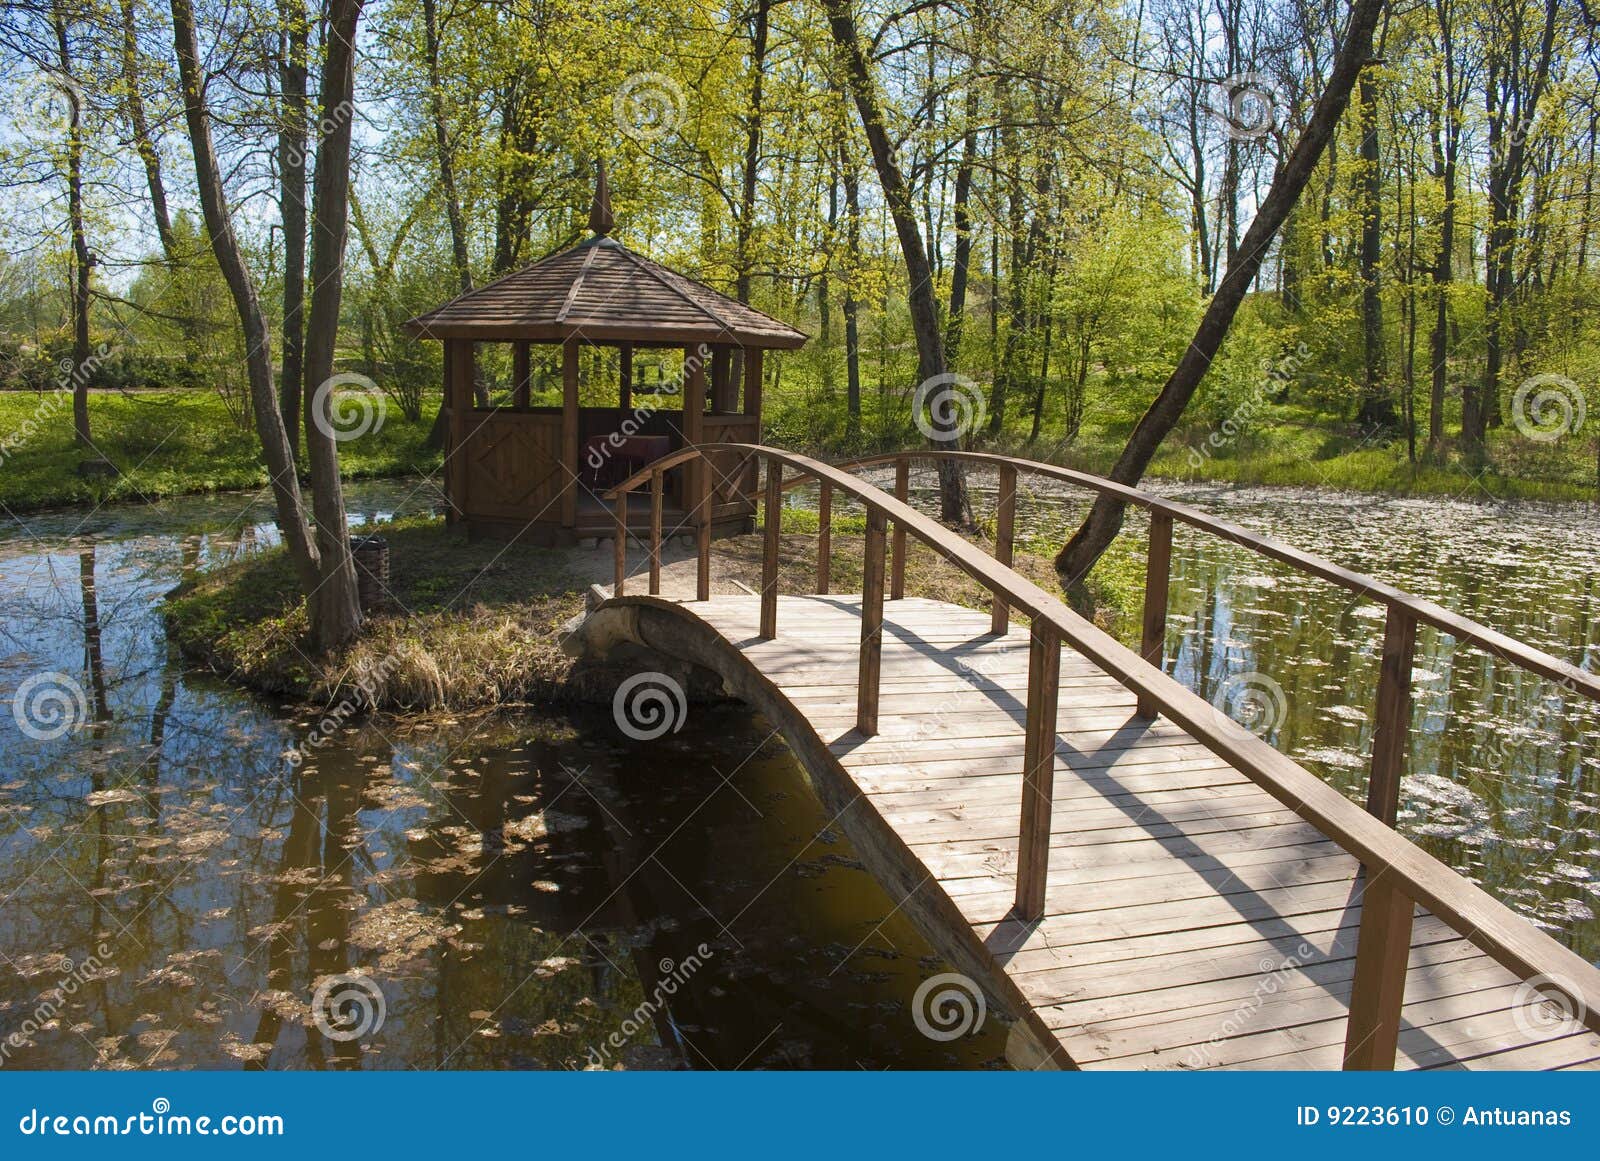 Ponte e alcove no parque. Ponte de madeira e alcove pequenos no parque